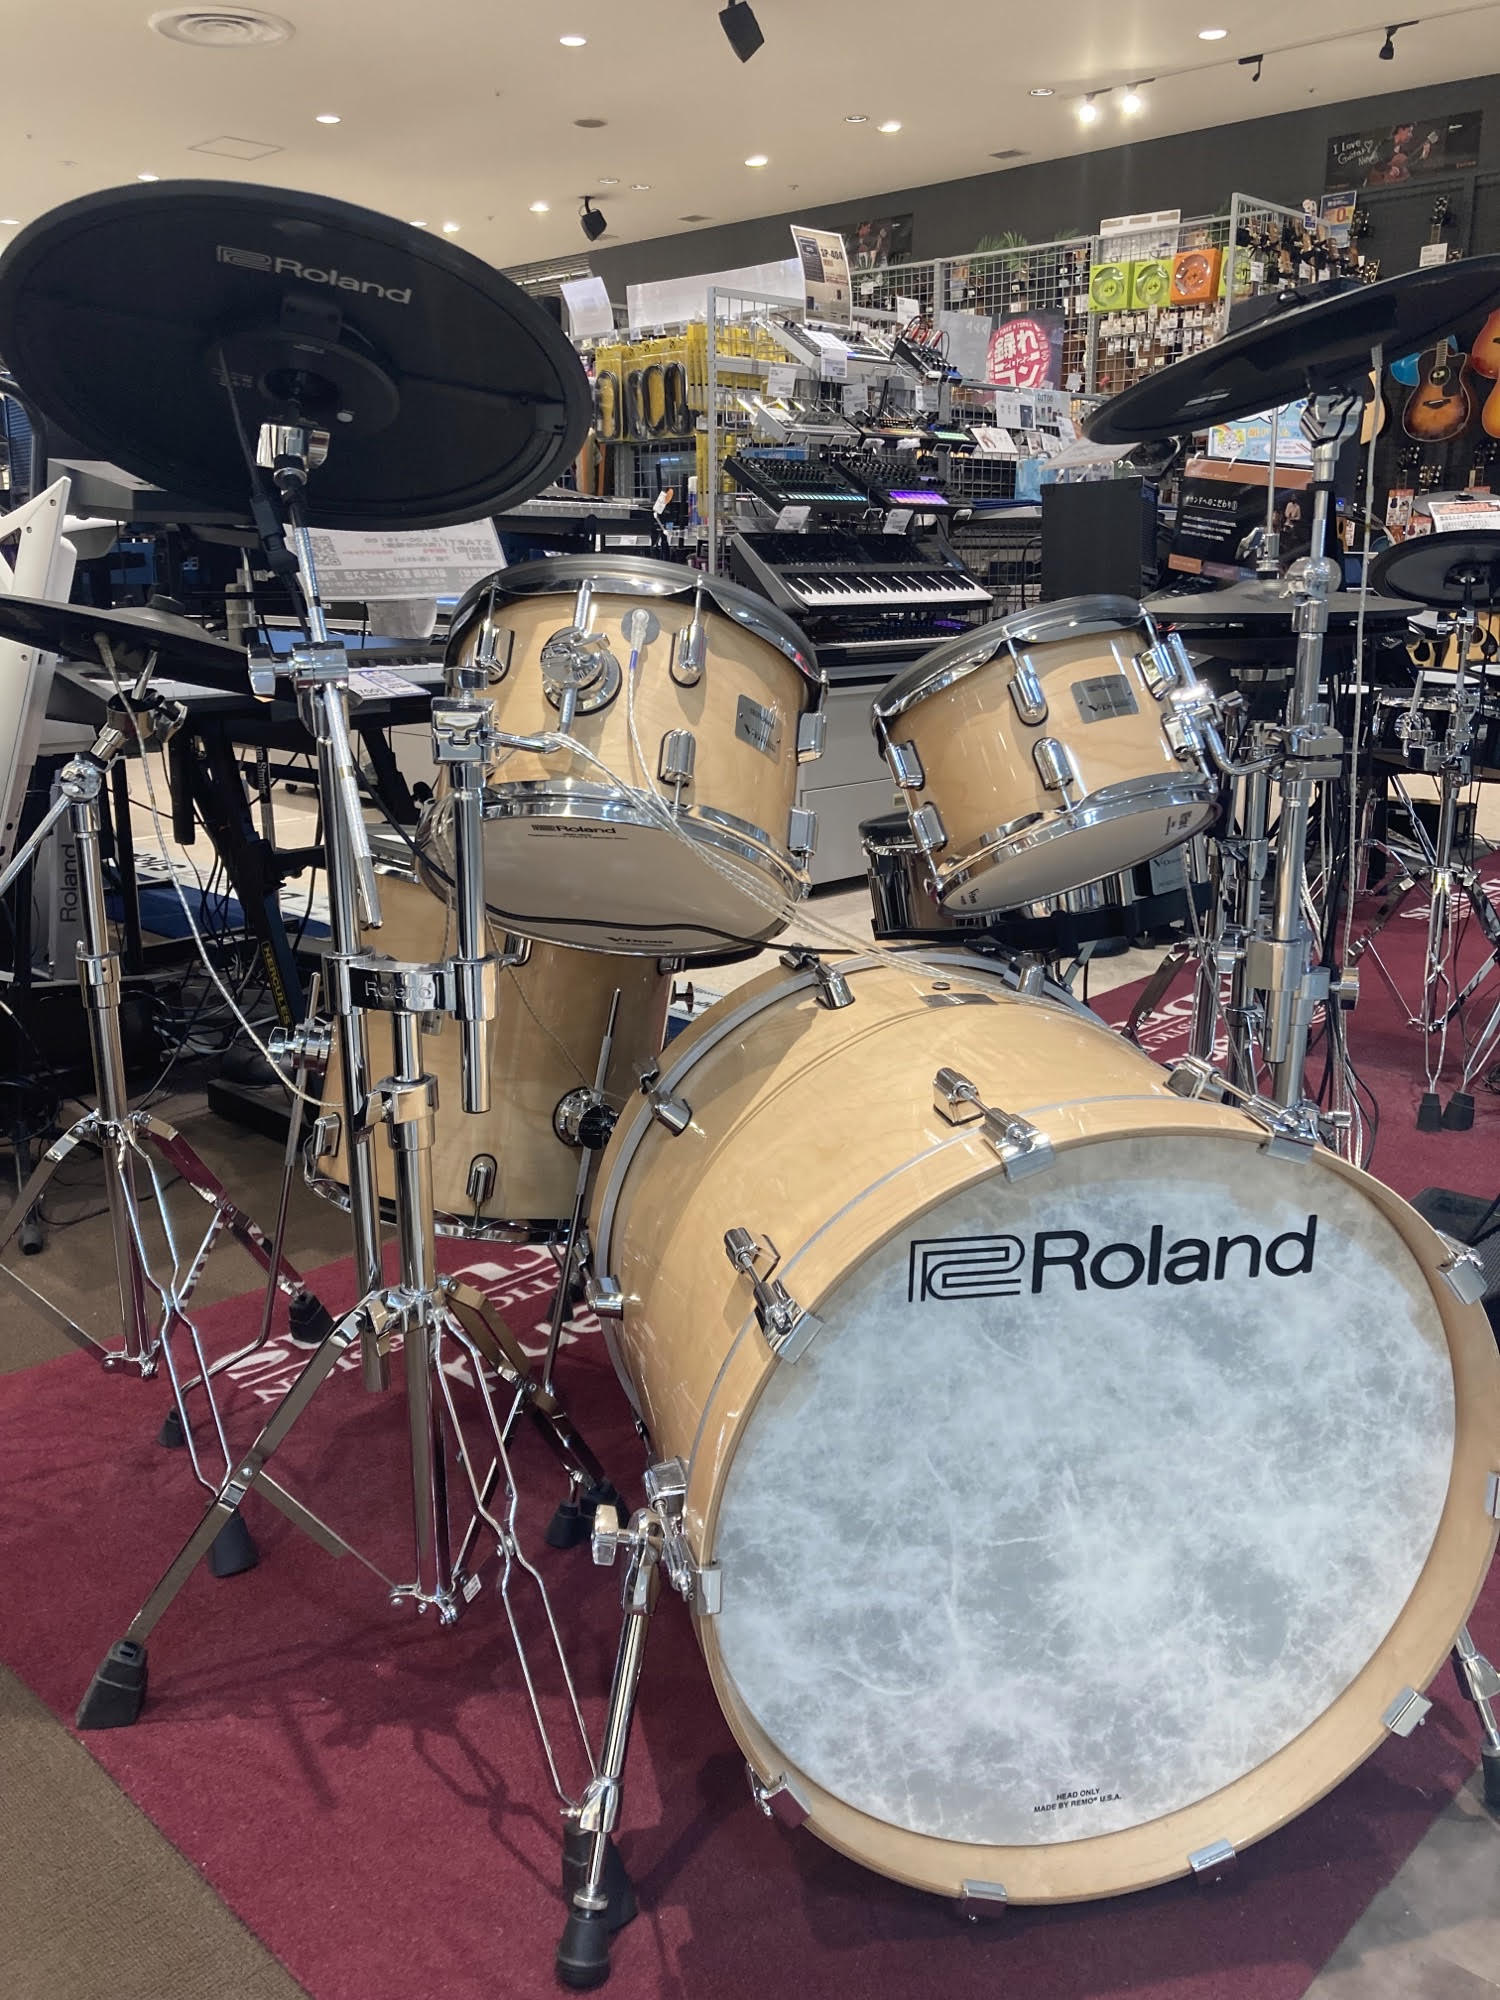 *Roland Planetとは！？ 洗練されたデジタル/V-Drumsの発信拠点として、全国9か所に設置されているRolandのオフィシャルブース「Roland Planet」といいます。Rolandのデジタル製品や電子ドラム製品の展開を一般の楽器店よりもより強化して展示しているのが特徴の1つです […]